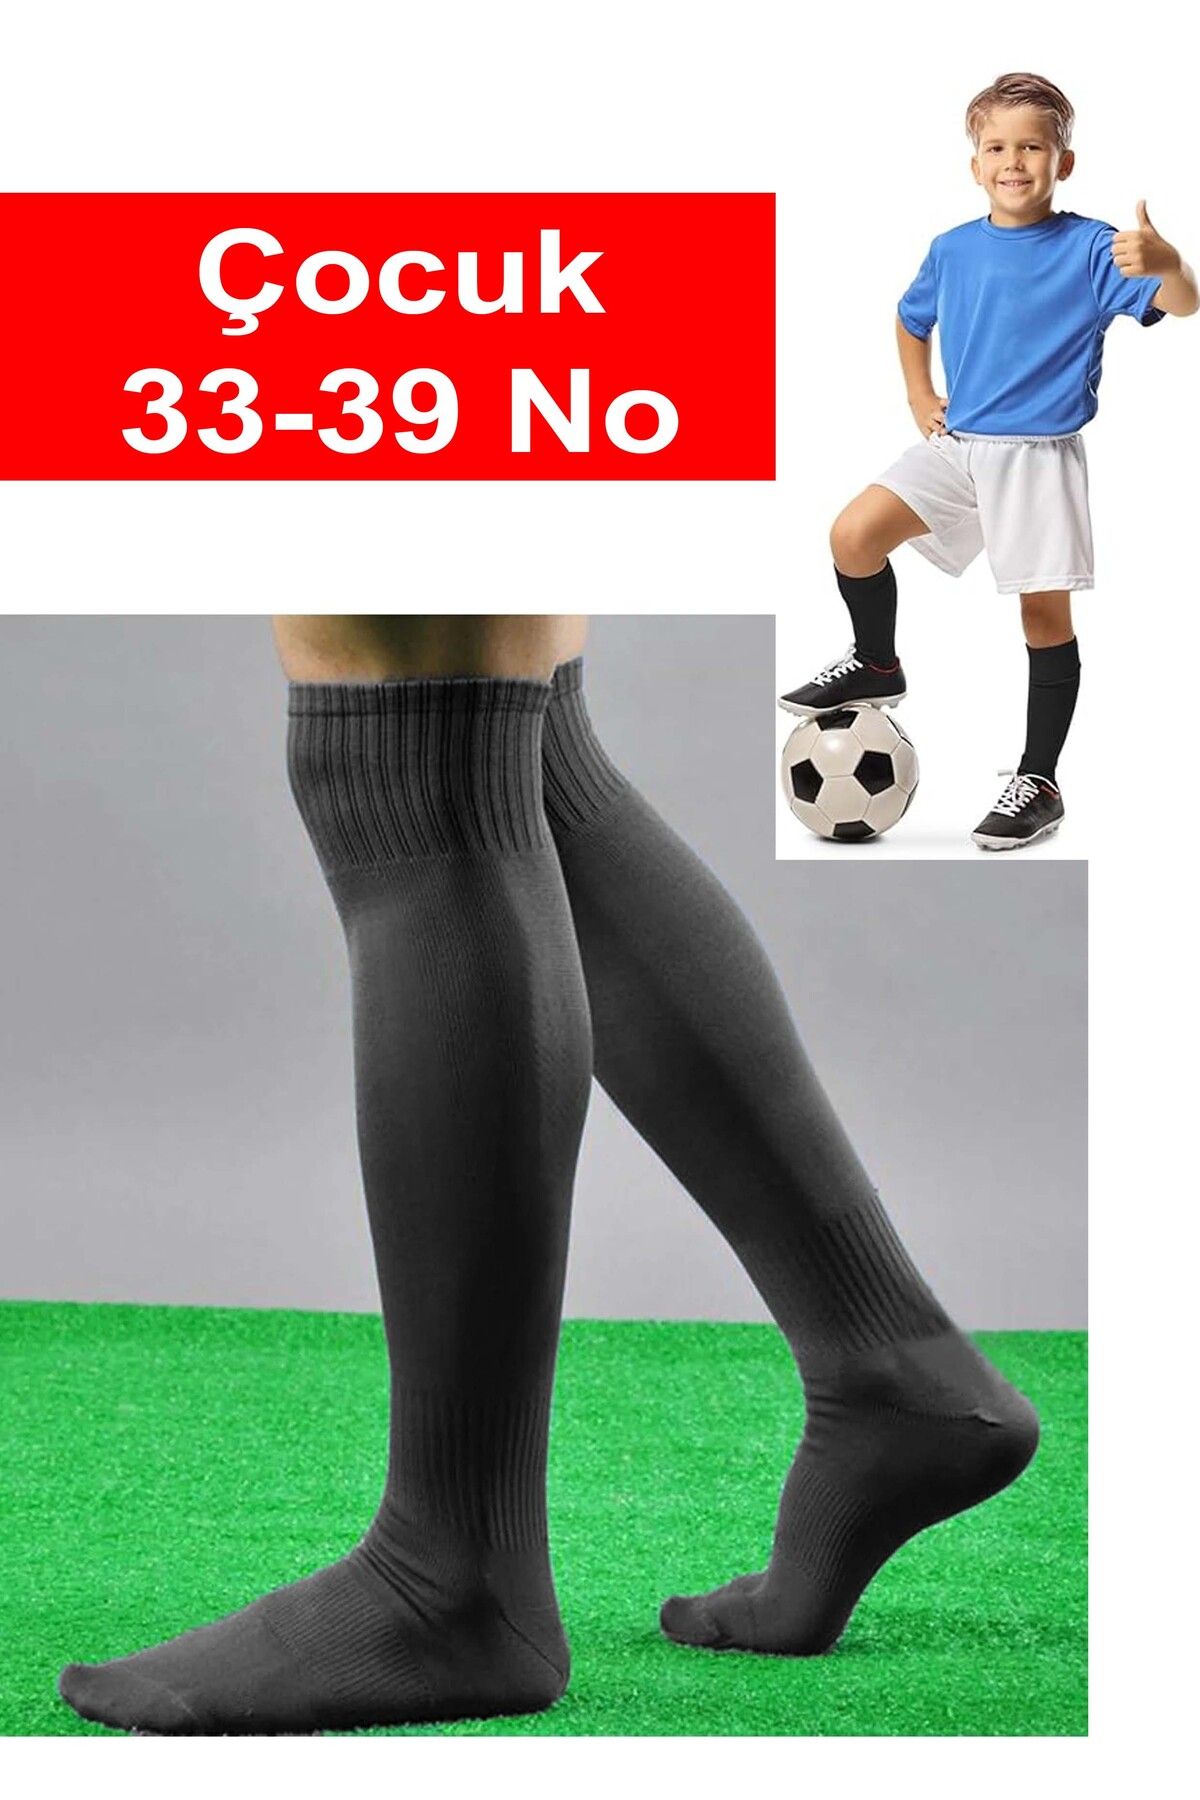 Liggo Çocuk Futbol Maç Çorabı Futbol Tozluk 33-39 Numara Futbol Halısaha Çorabı Konç